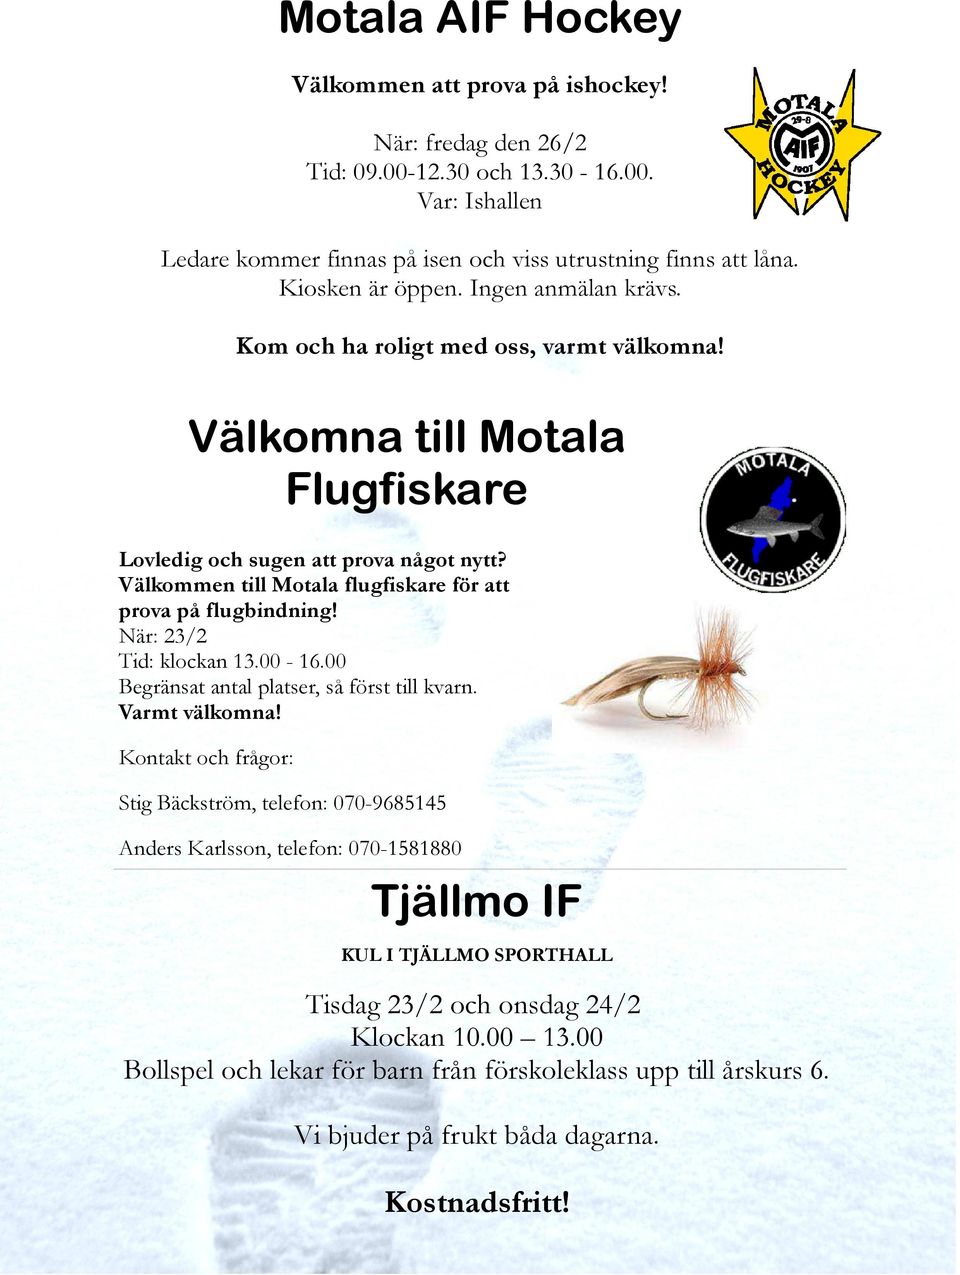 Välkommen till Motala flugfiskare för att prova på flugbindning! När: 23/2 Tid: klockan 13.00-16.00 Begränsat antal platser, så först till kvarn. Varmt välkomna!